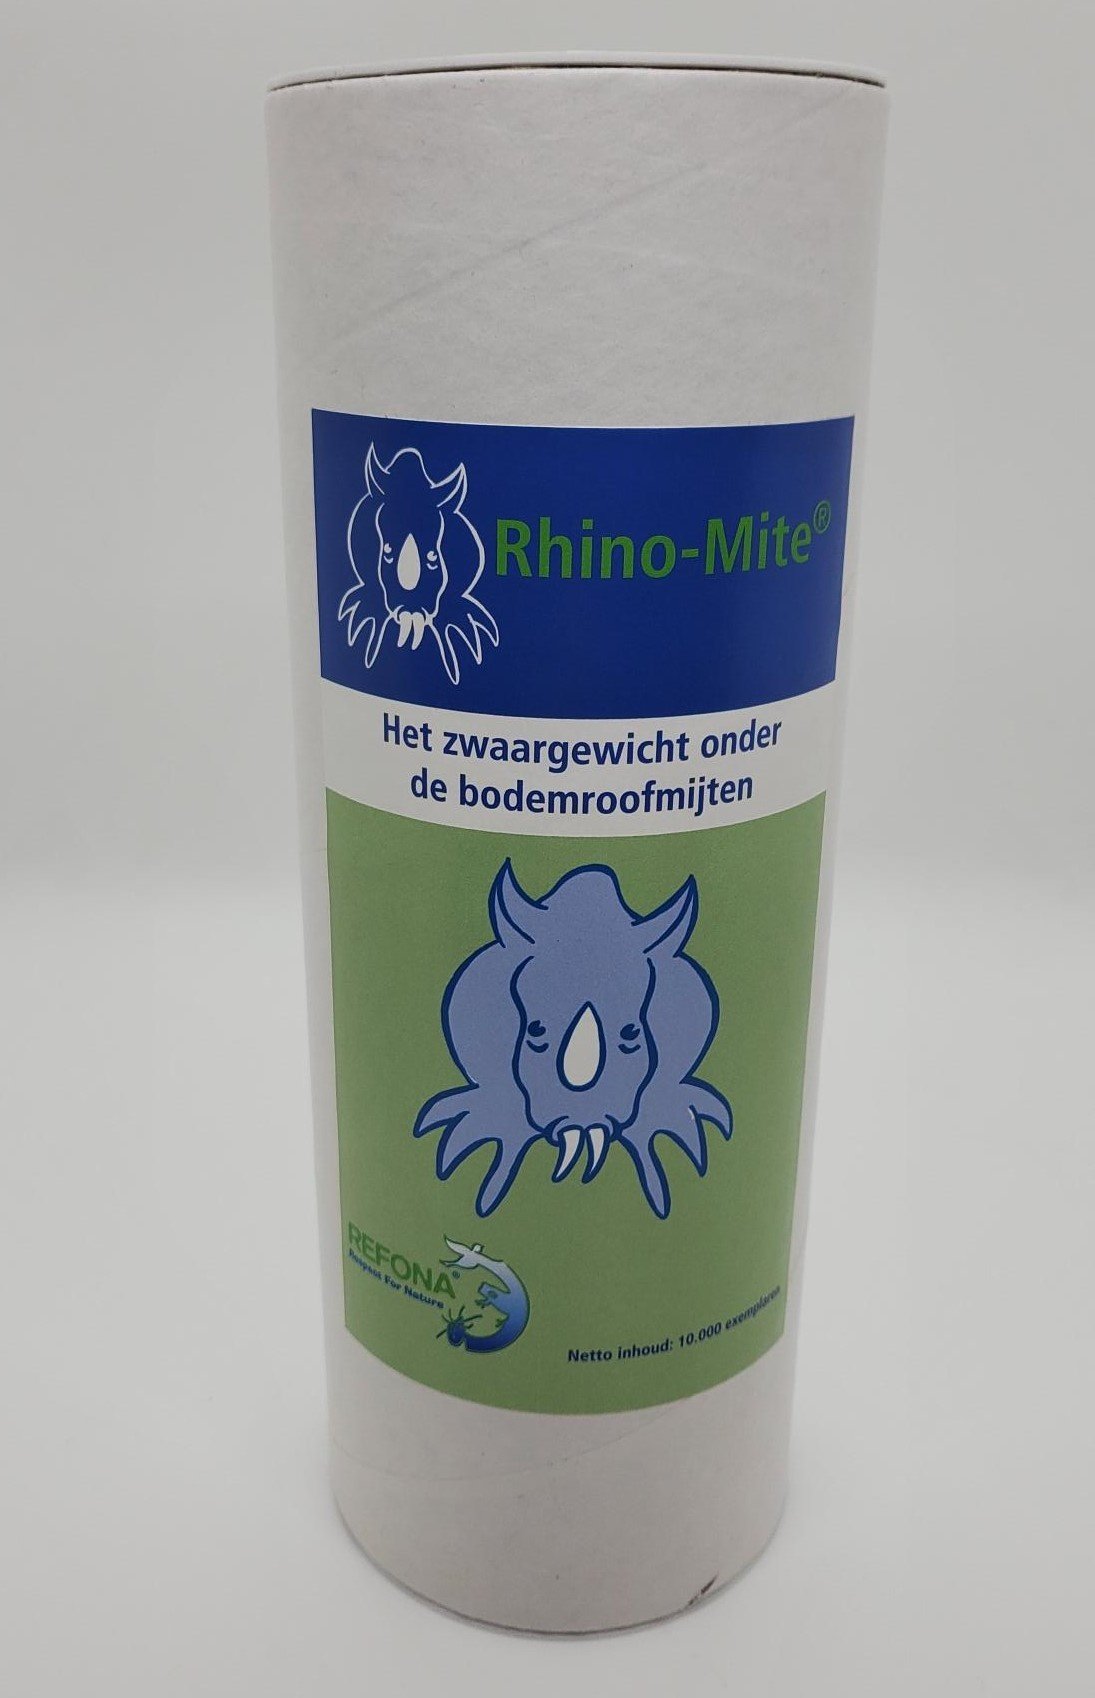 Refona Rhino-Mite | Bodemroofmijt ter bestrijding van eieren van verschillende soorten vliegen 50.000 stuks in 5 Liter